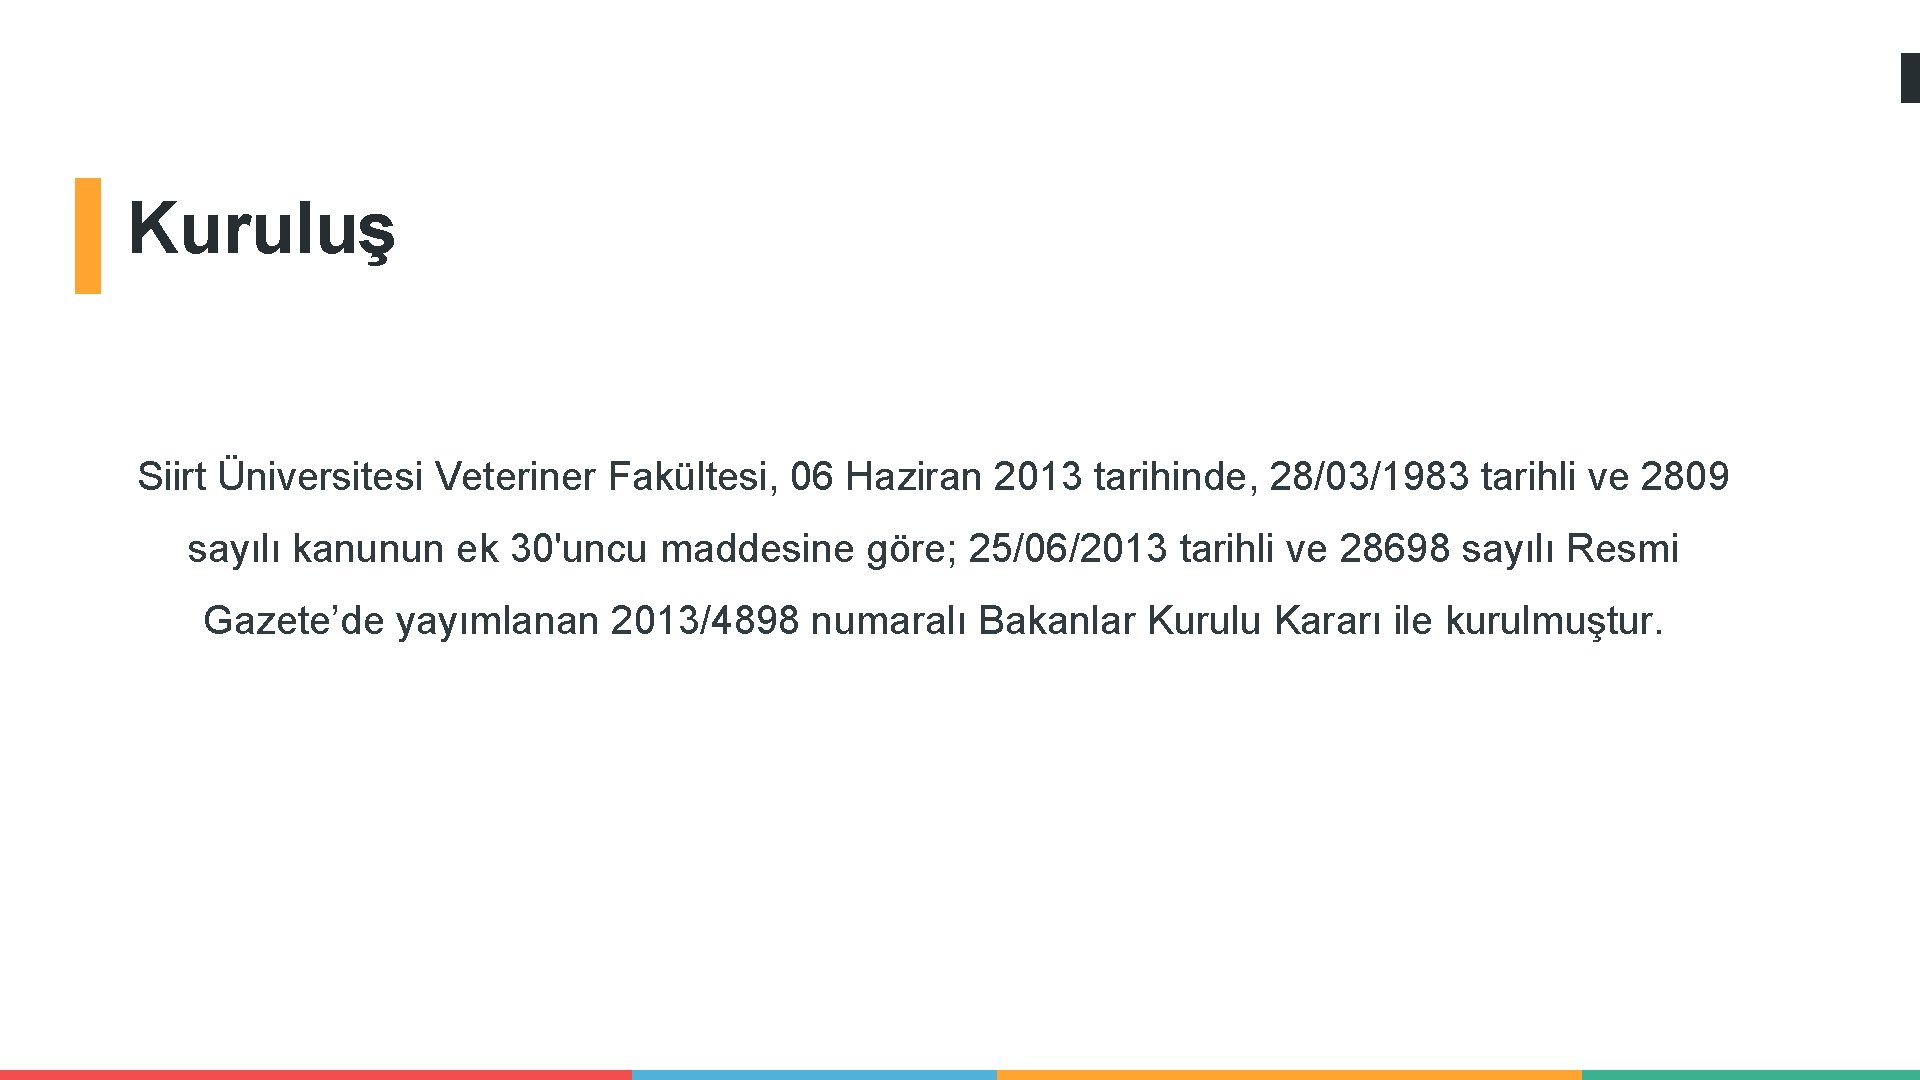 Kuruluş Siirt Üniversitesi Veteriner Fakültesi, 06 Haziran 2013 tarihinde, 28/03/1983 tarihli ve 2809 sayılı